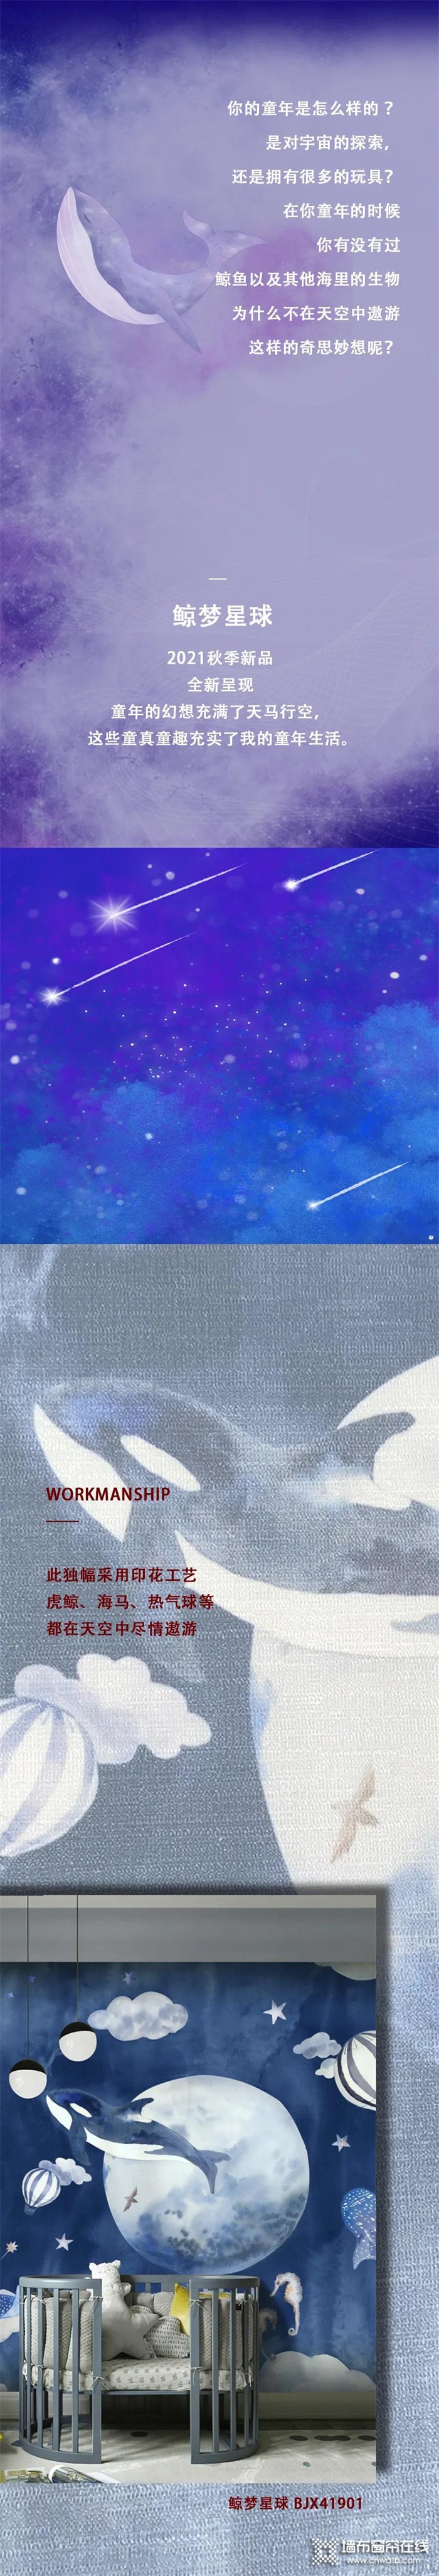 摩登野兽墙布2021秋季新品丨鲸梦星球：用一颗炽热的童心去感受生命中的温暖